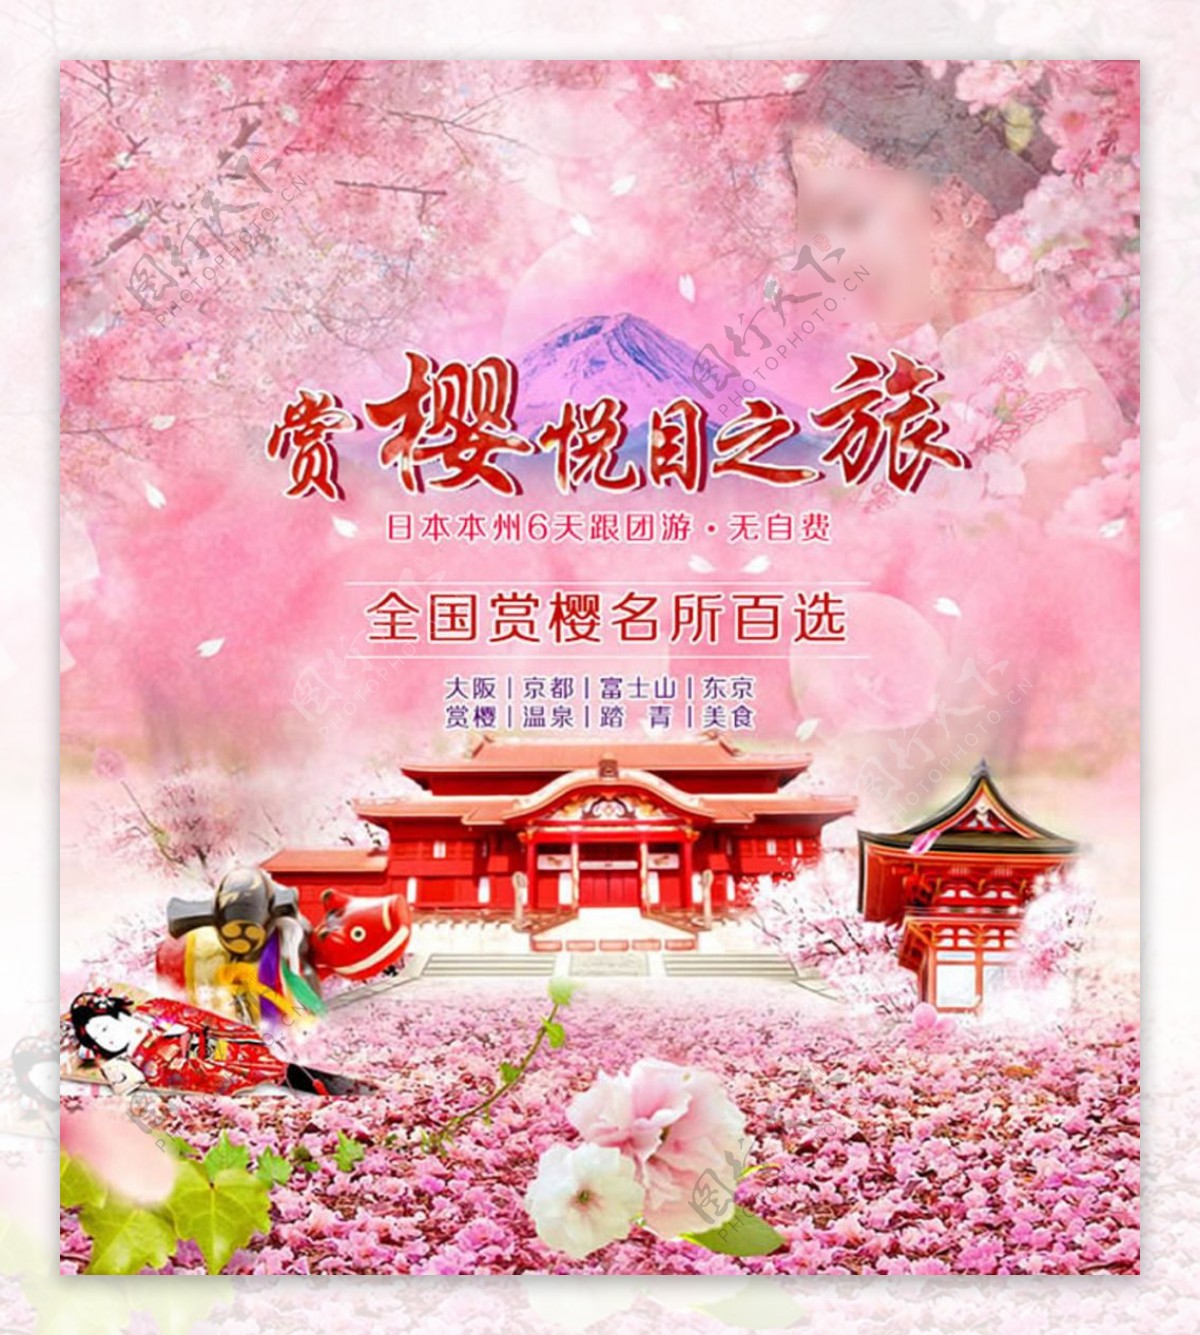 日本赏樱悦目之旅宣传海报psd素材